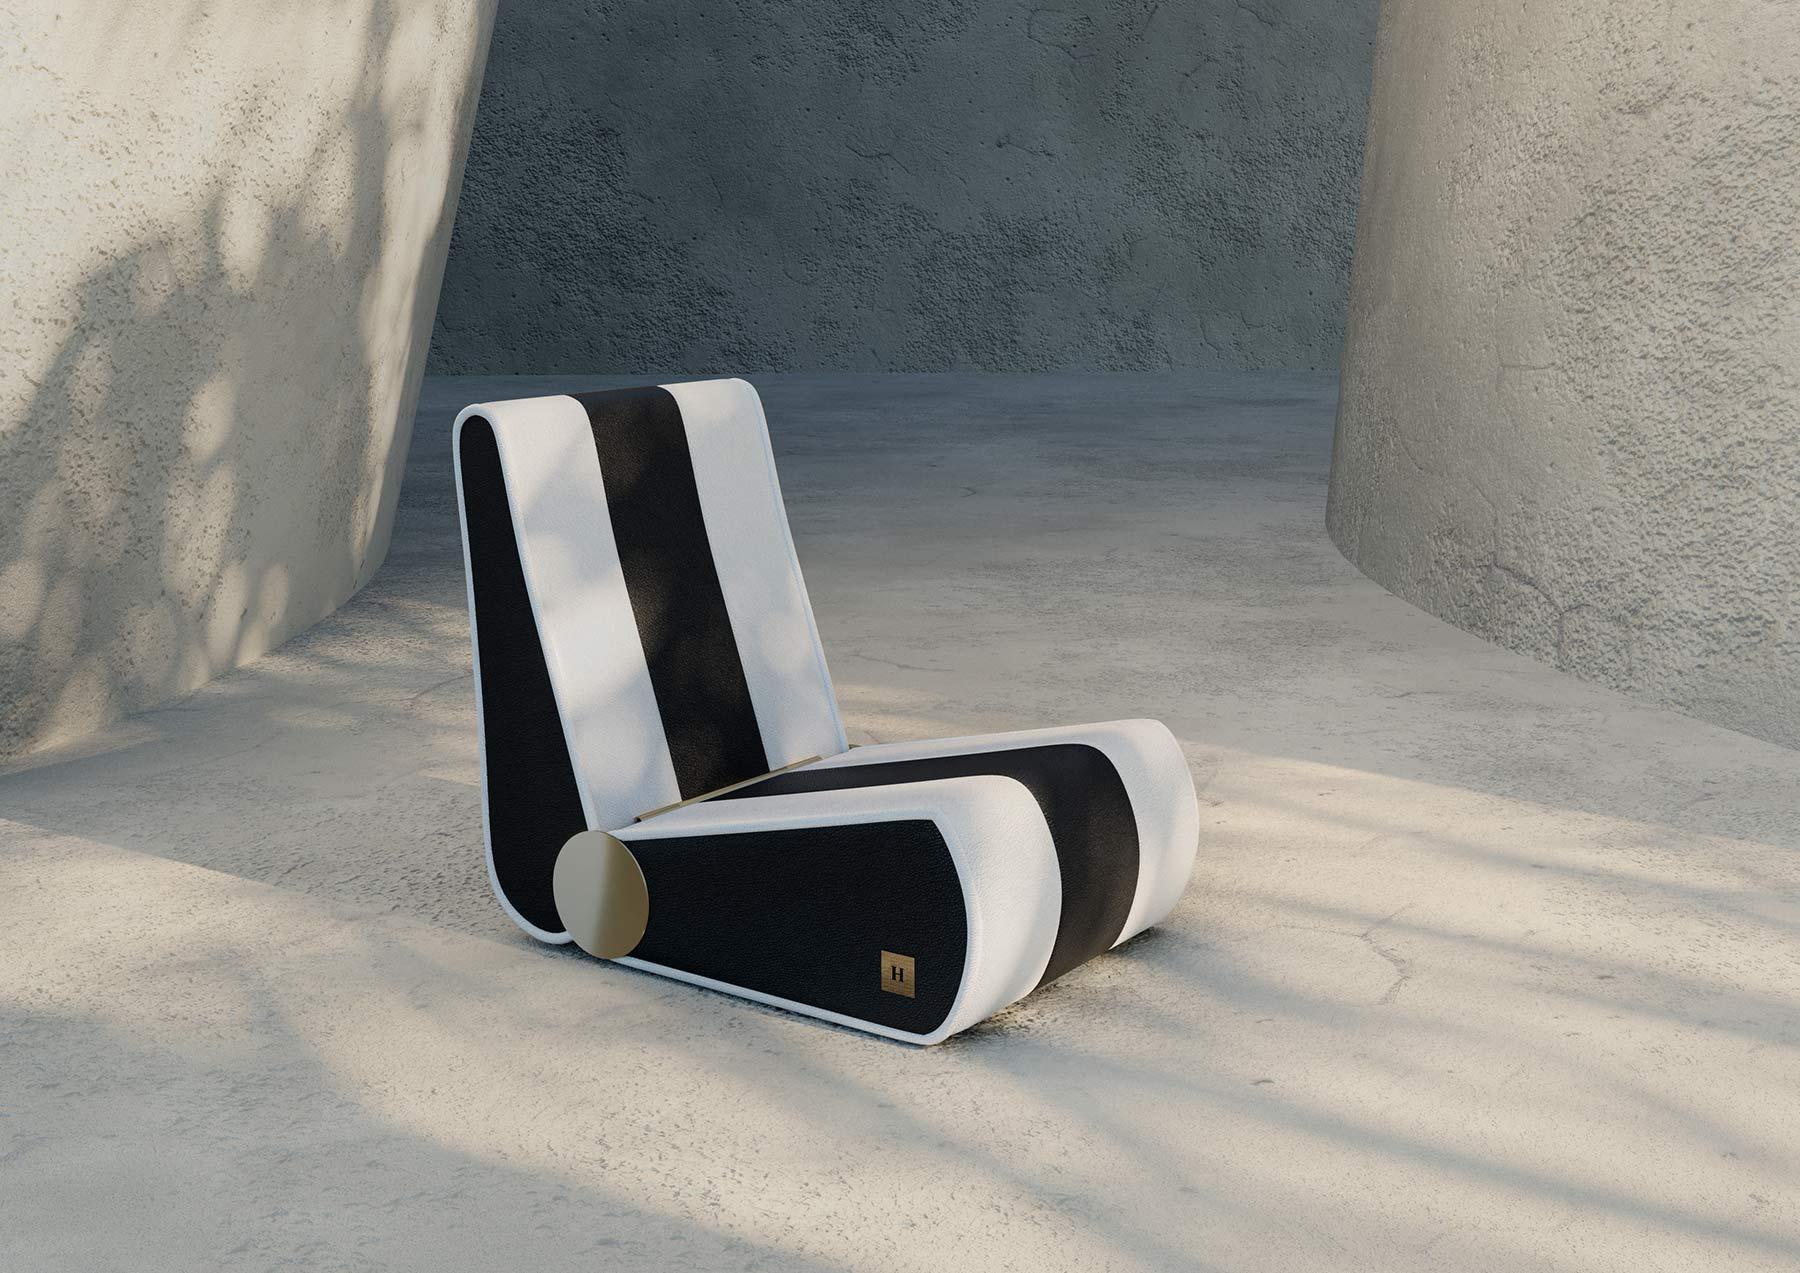 Le fauteuil Marina est un meuble contemporain inspiré par la mer, parfait pour se détendre et profiter d'une aube ou d'un coucher de soleil paisible. Avec son design moderne et pratique, il constitue un ajout polyvalent à tout salon. Avec son design